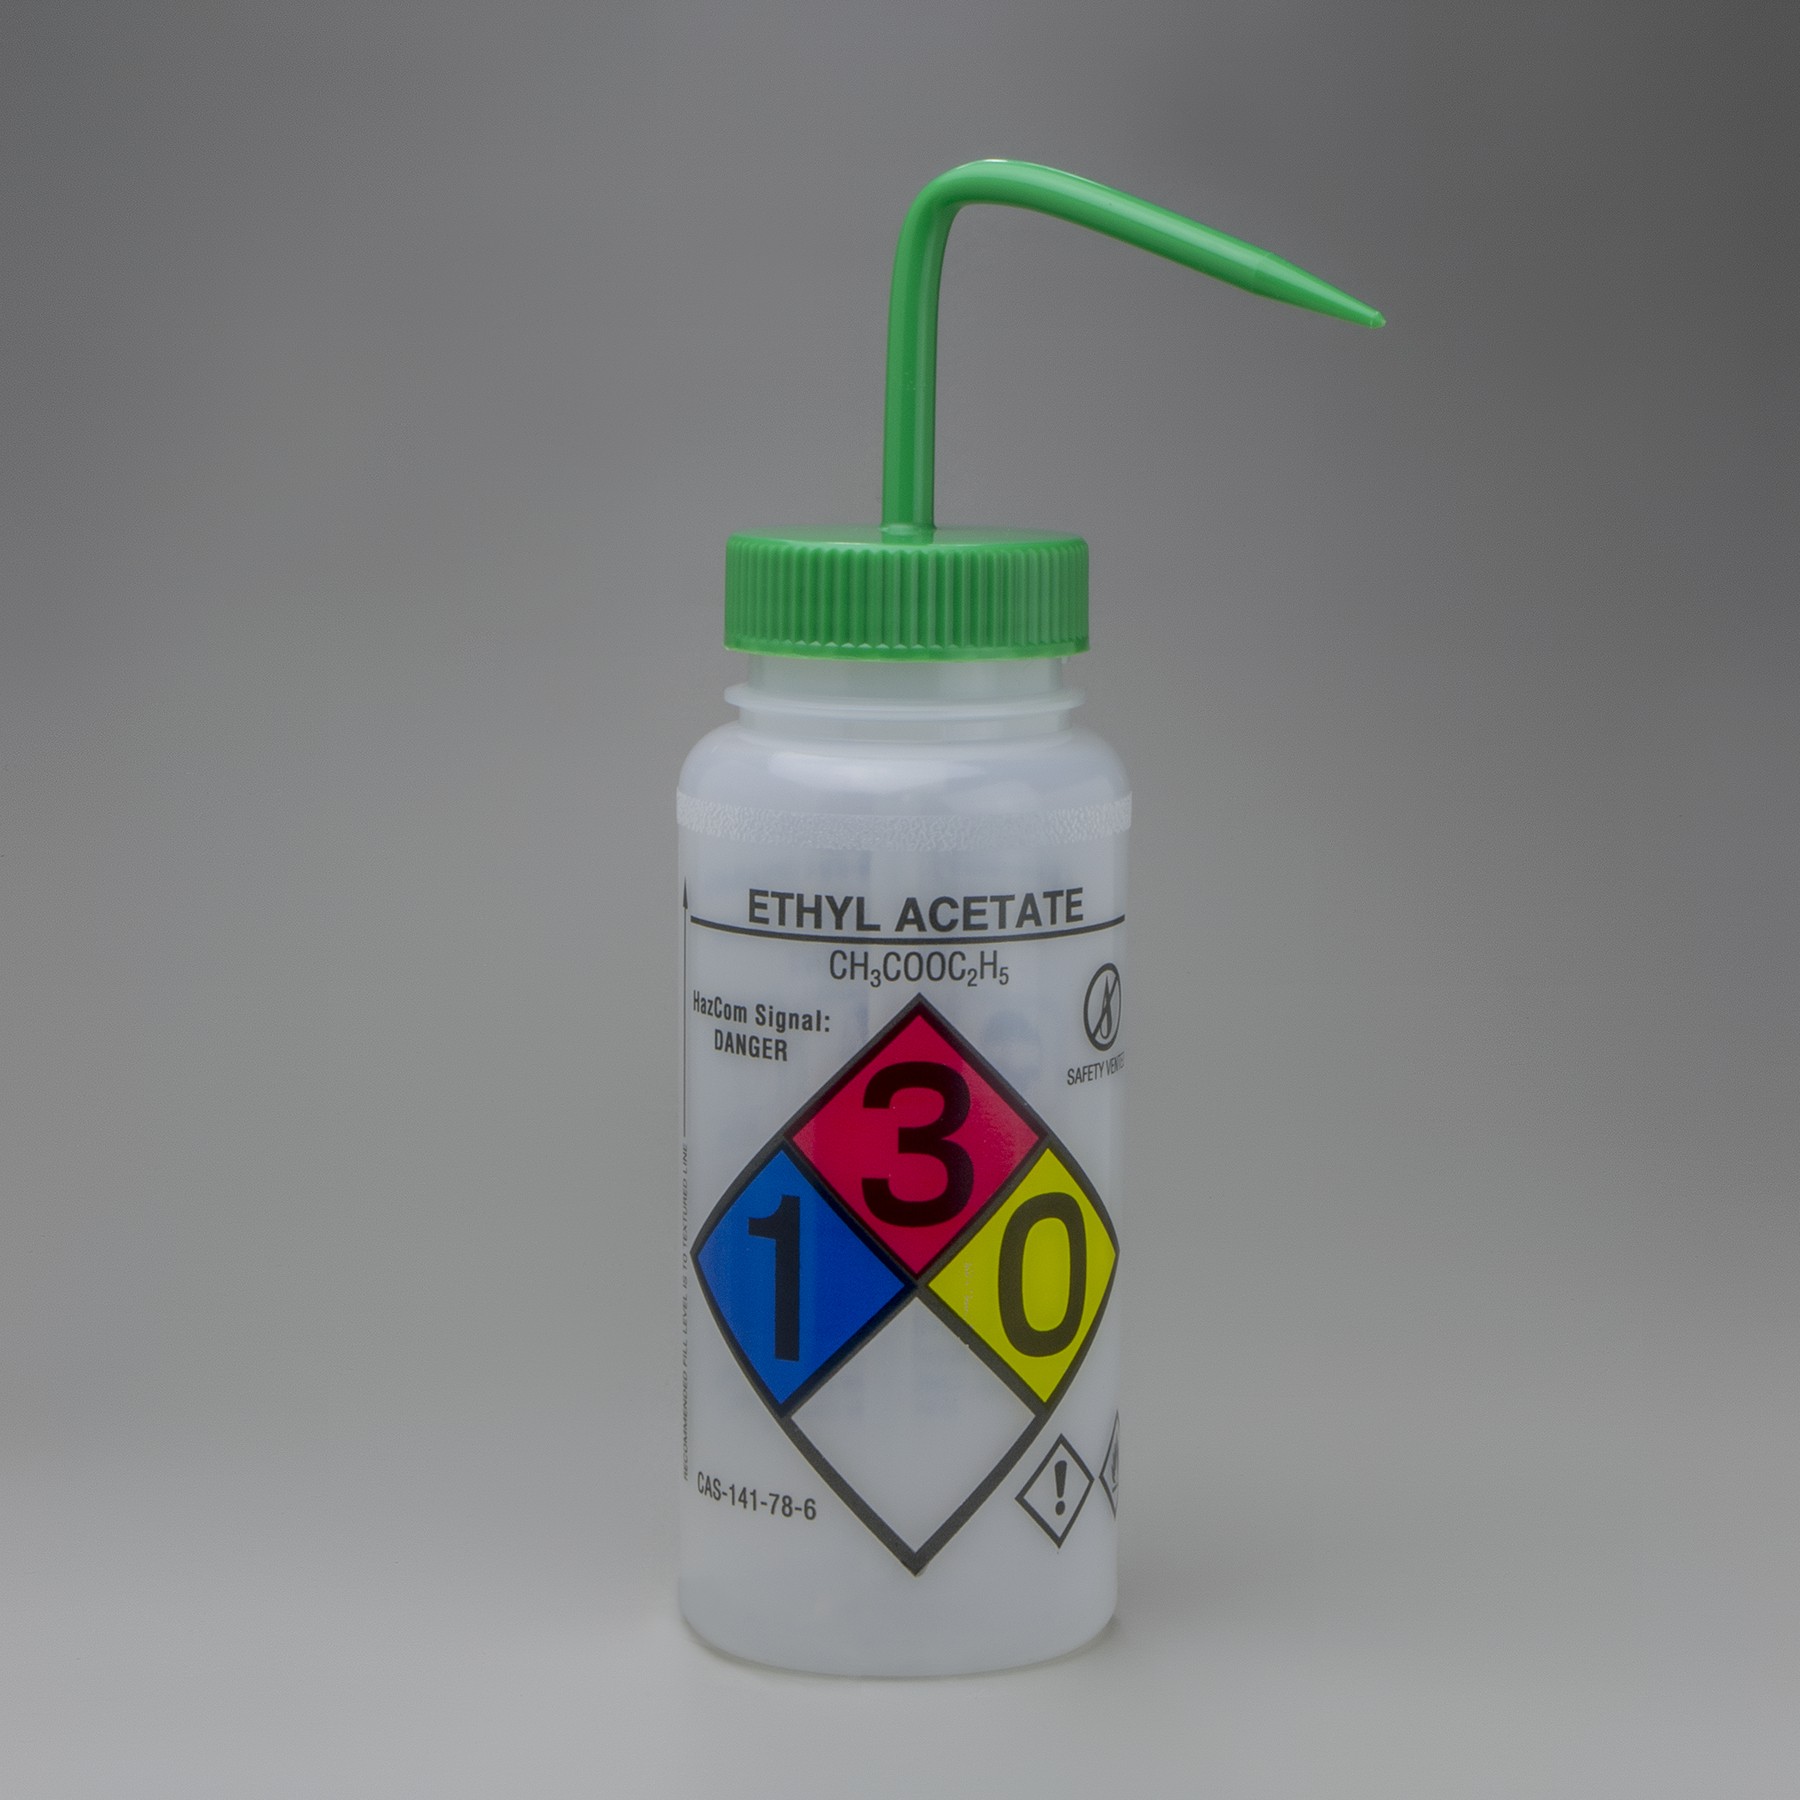 SP Bel-Art GHS Labeled Safety-Vented Ethyl Acetate Wash Bottles; 500ml (16oz), Polyethylene w/Green Polypropylene Cap (Pack of 4)